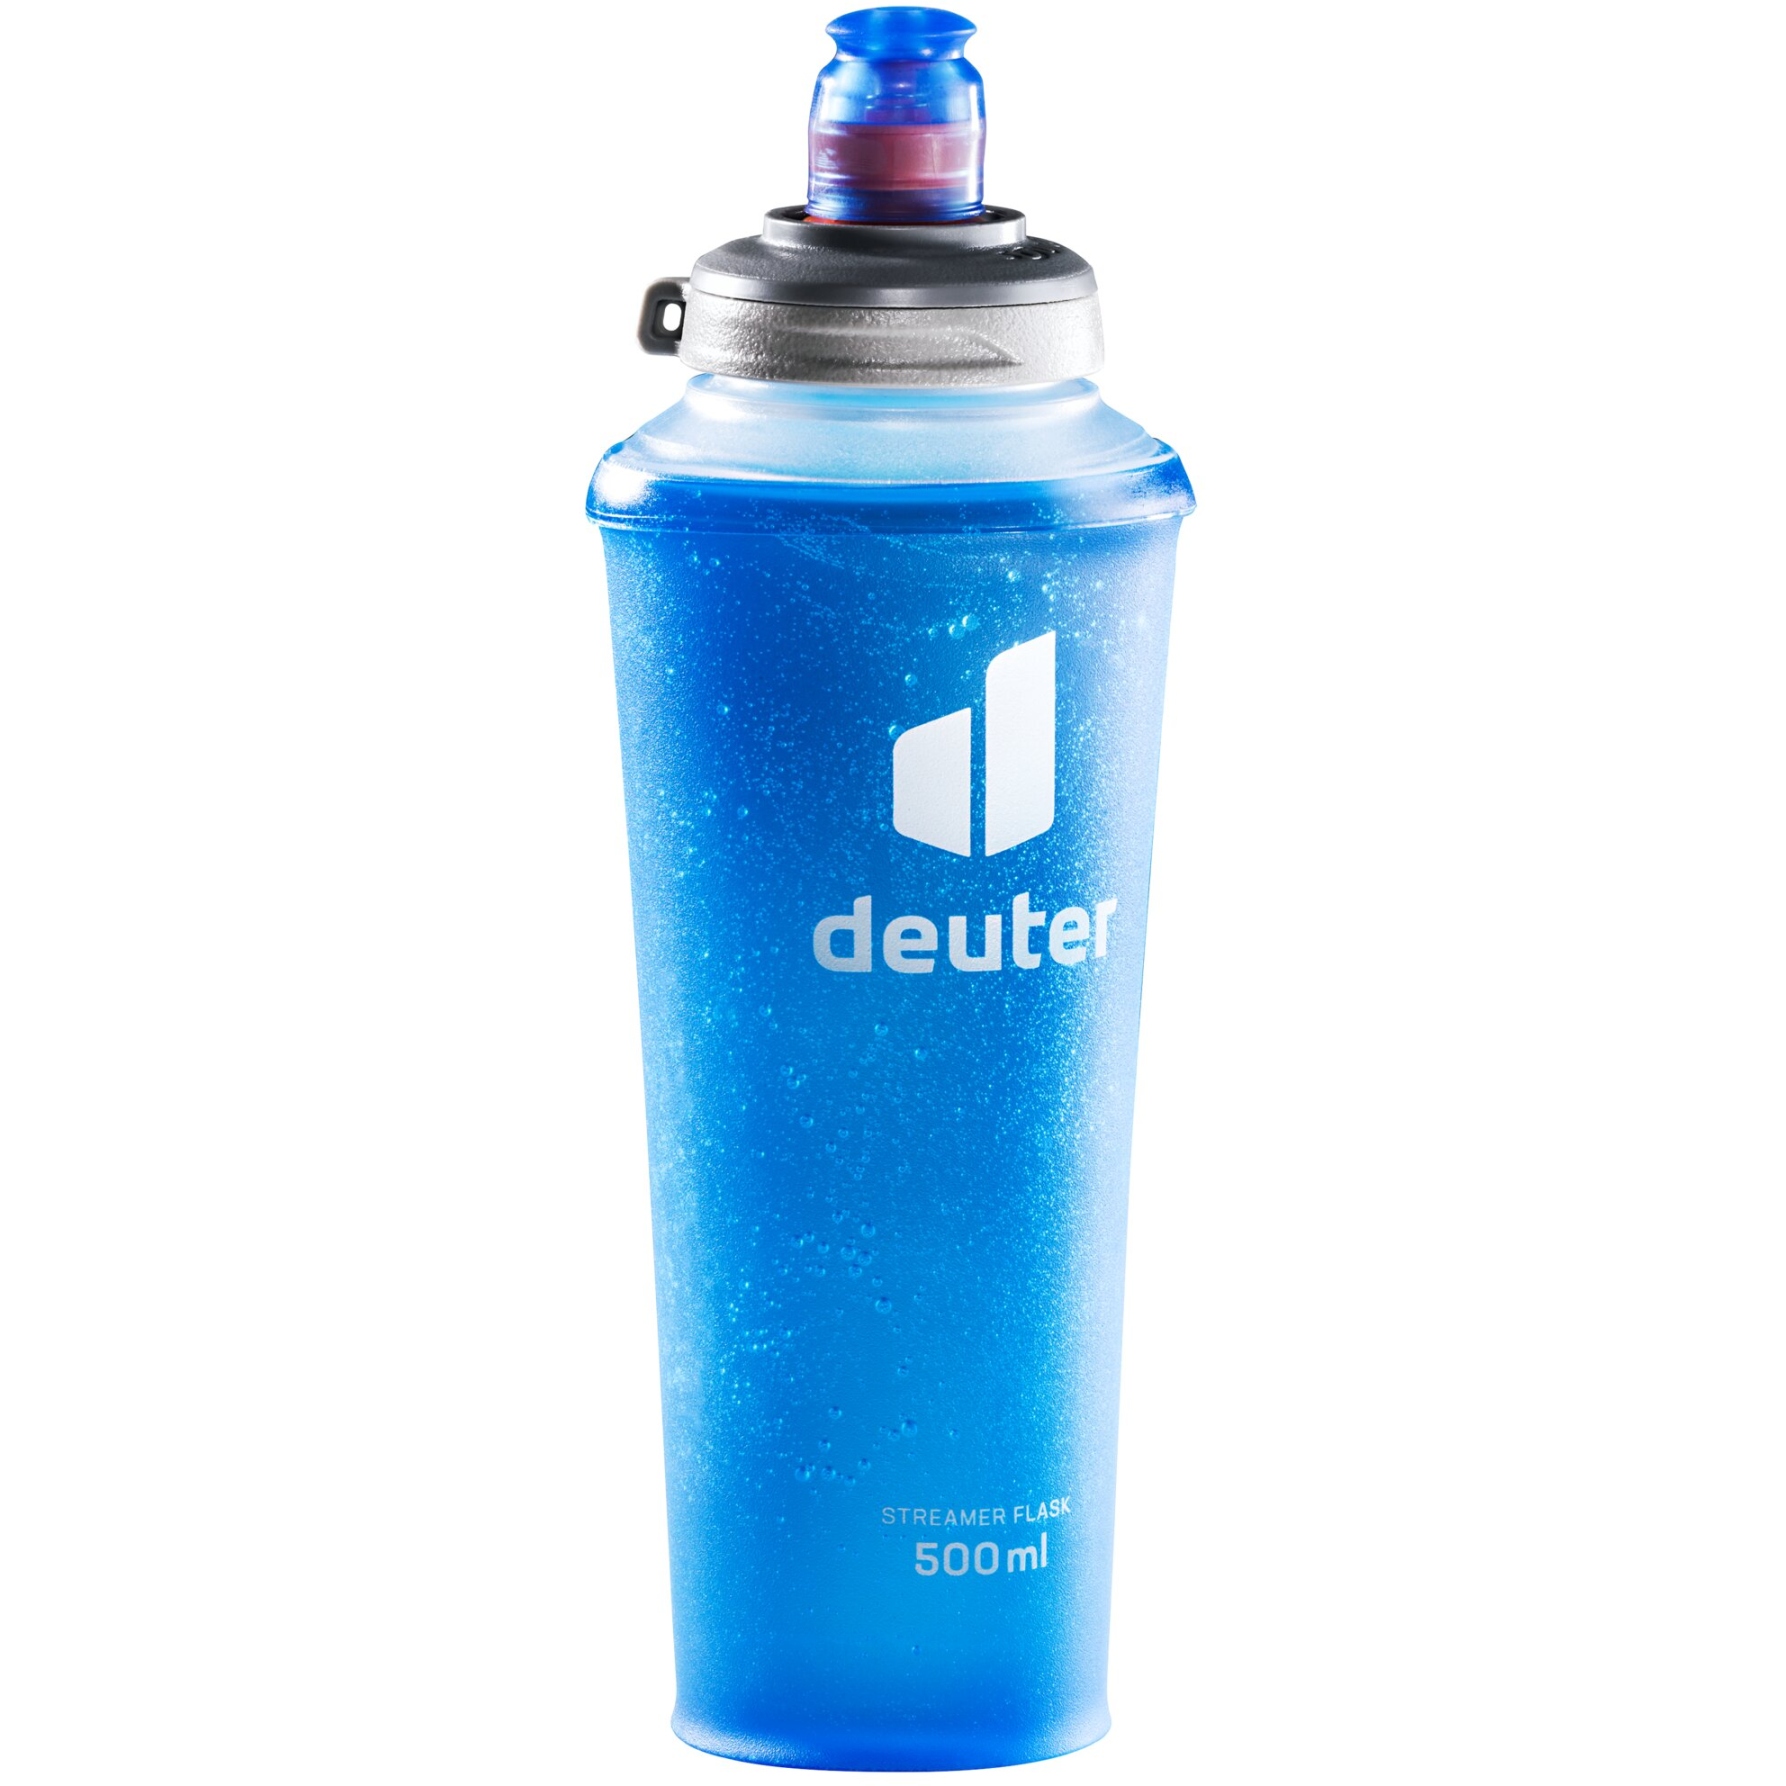 Produktbild von Deuter Streamer Flask 500 ml Faltflasche - transparent